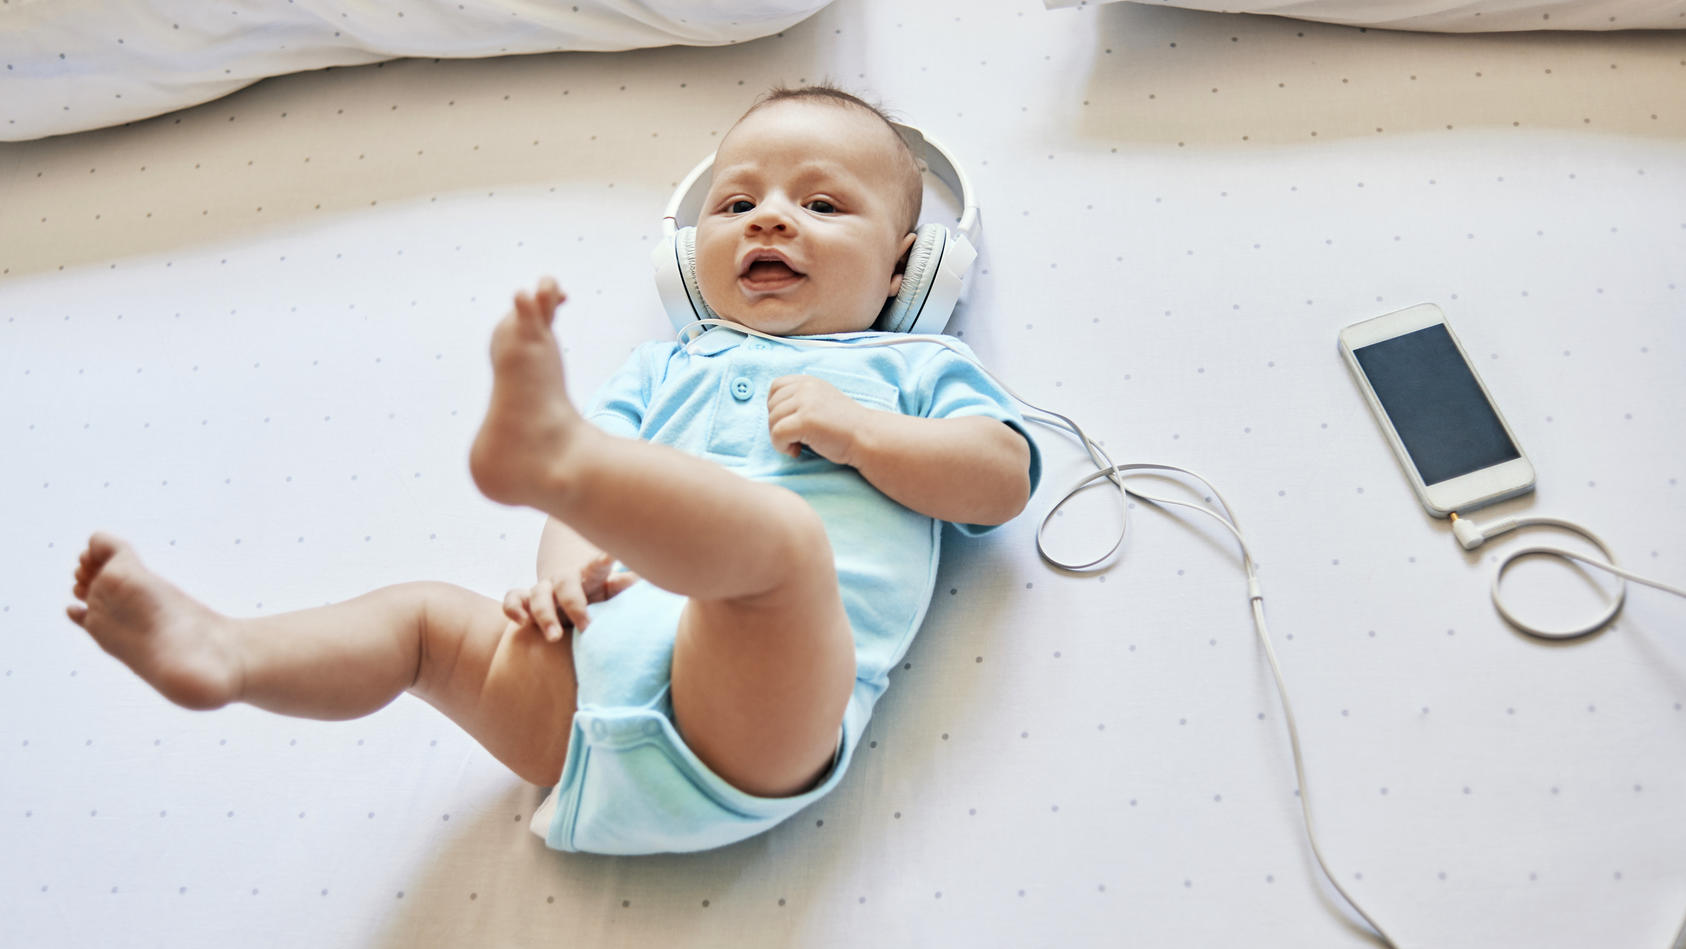 Kleiner Musikfan: Wenn das Baby Musik liebt, empfiehlt es sich diese in den Alltag zu integrieren. Die Klänge erinnern das Kind an die geborgene Zeit im Bauch der Mutter und können zur Entwicklung beitragen